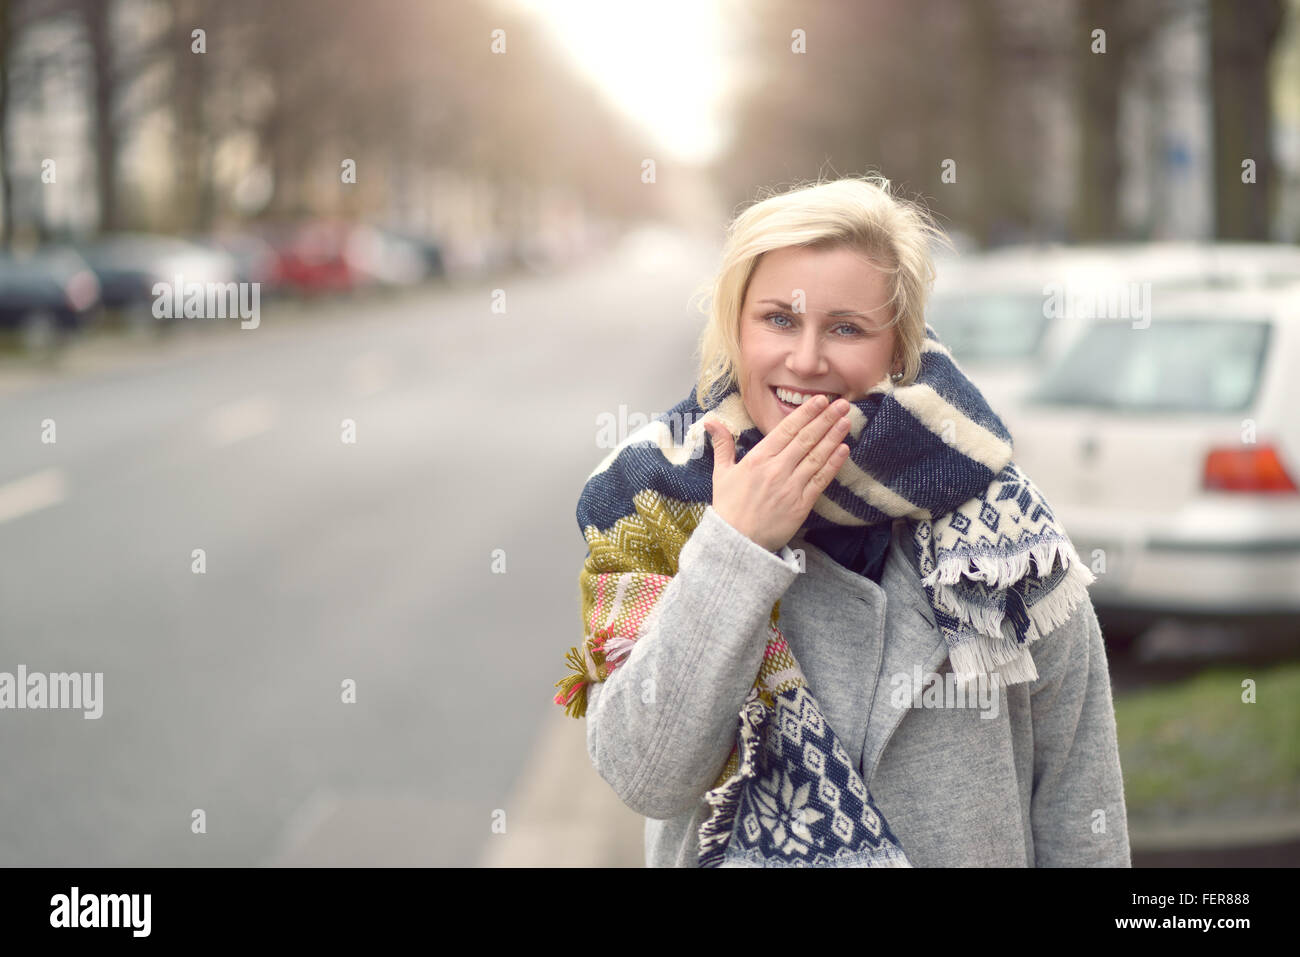 Lächelnd attraktive junge blonde Frau in einem wolligen Schal stehen an der Seite einer städtischen Straße, Blick in die Kamera, Oberkörper Stockfoto